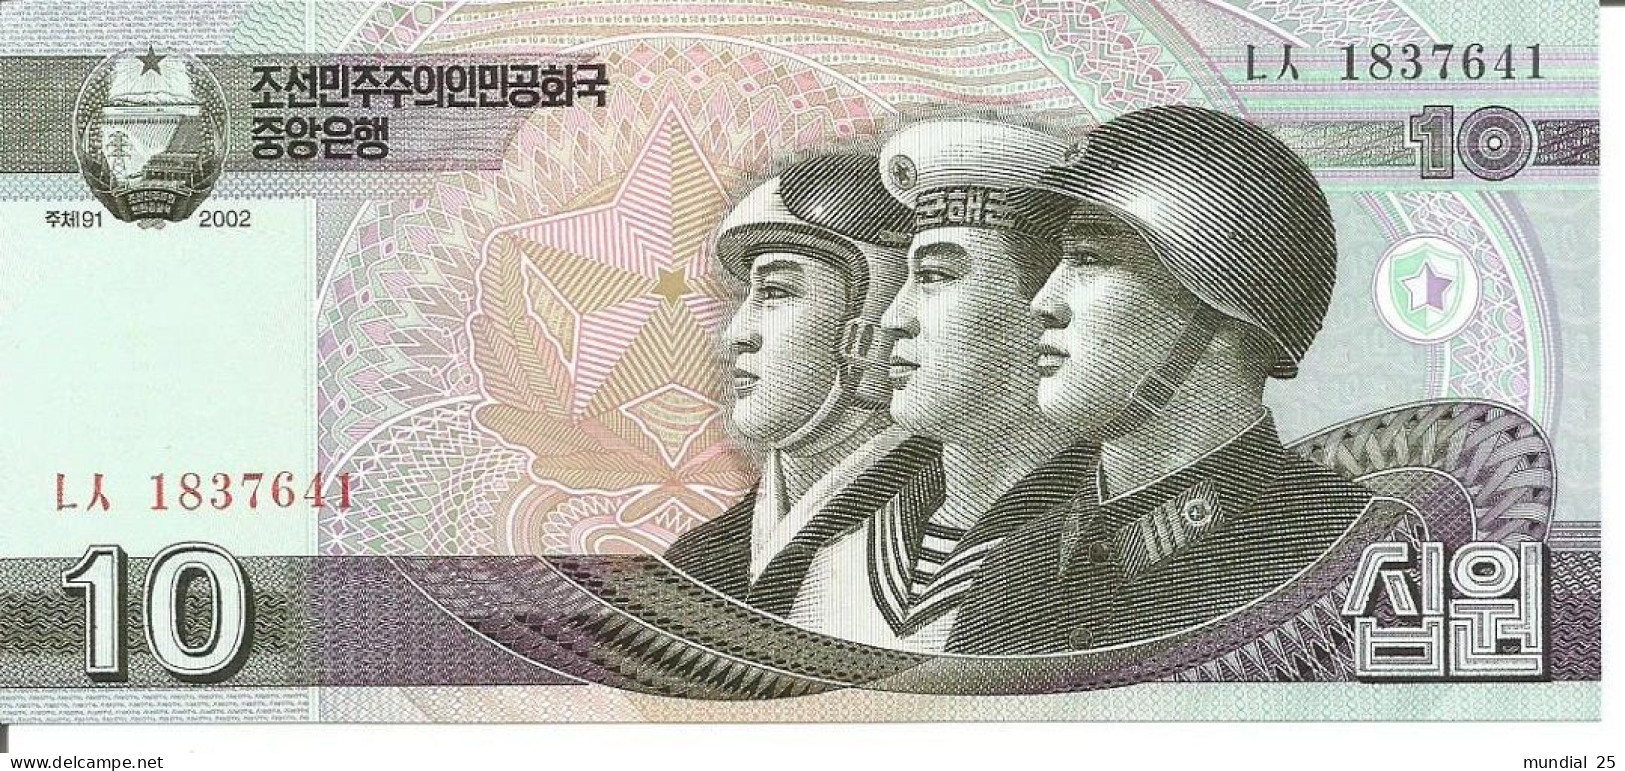 3 KOREA, NORTH NOTES 10 WON 2002 - Corea Del Nord